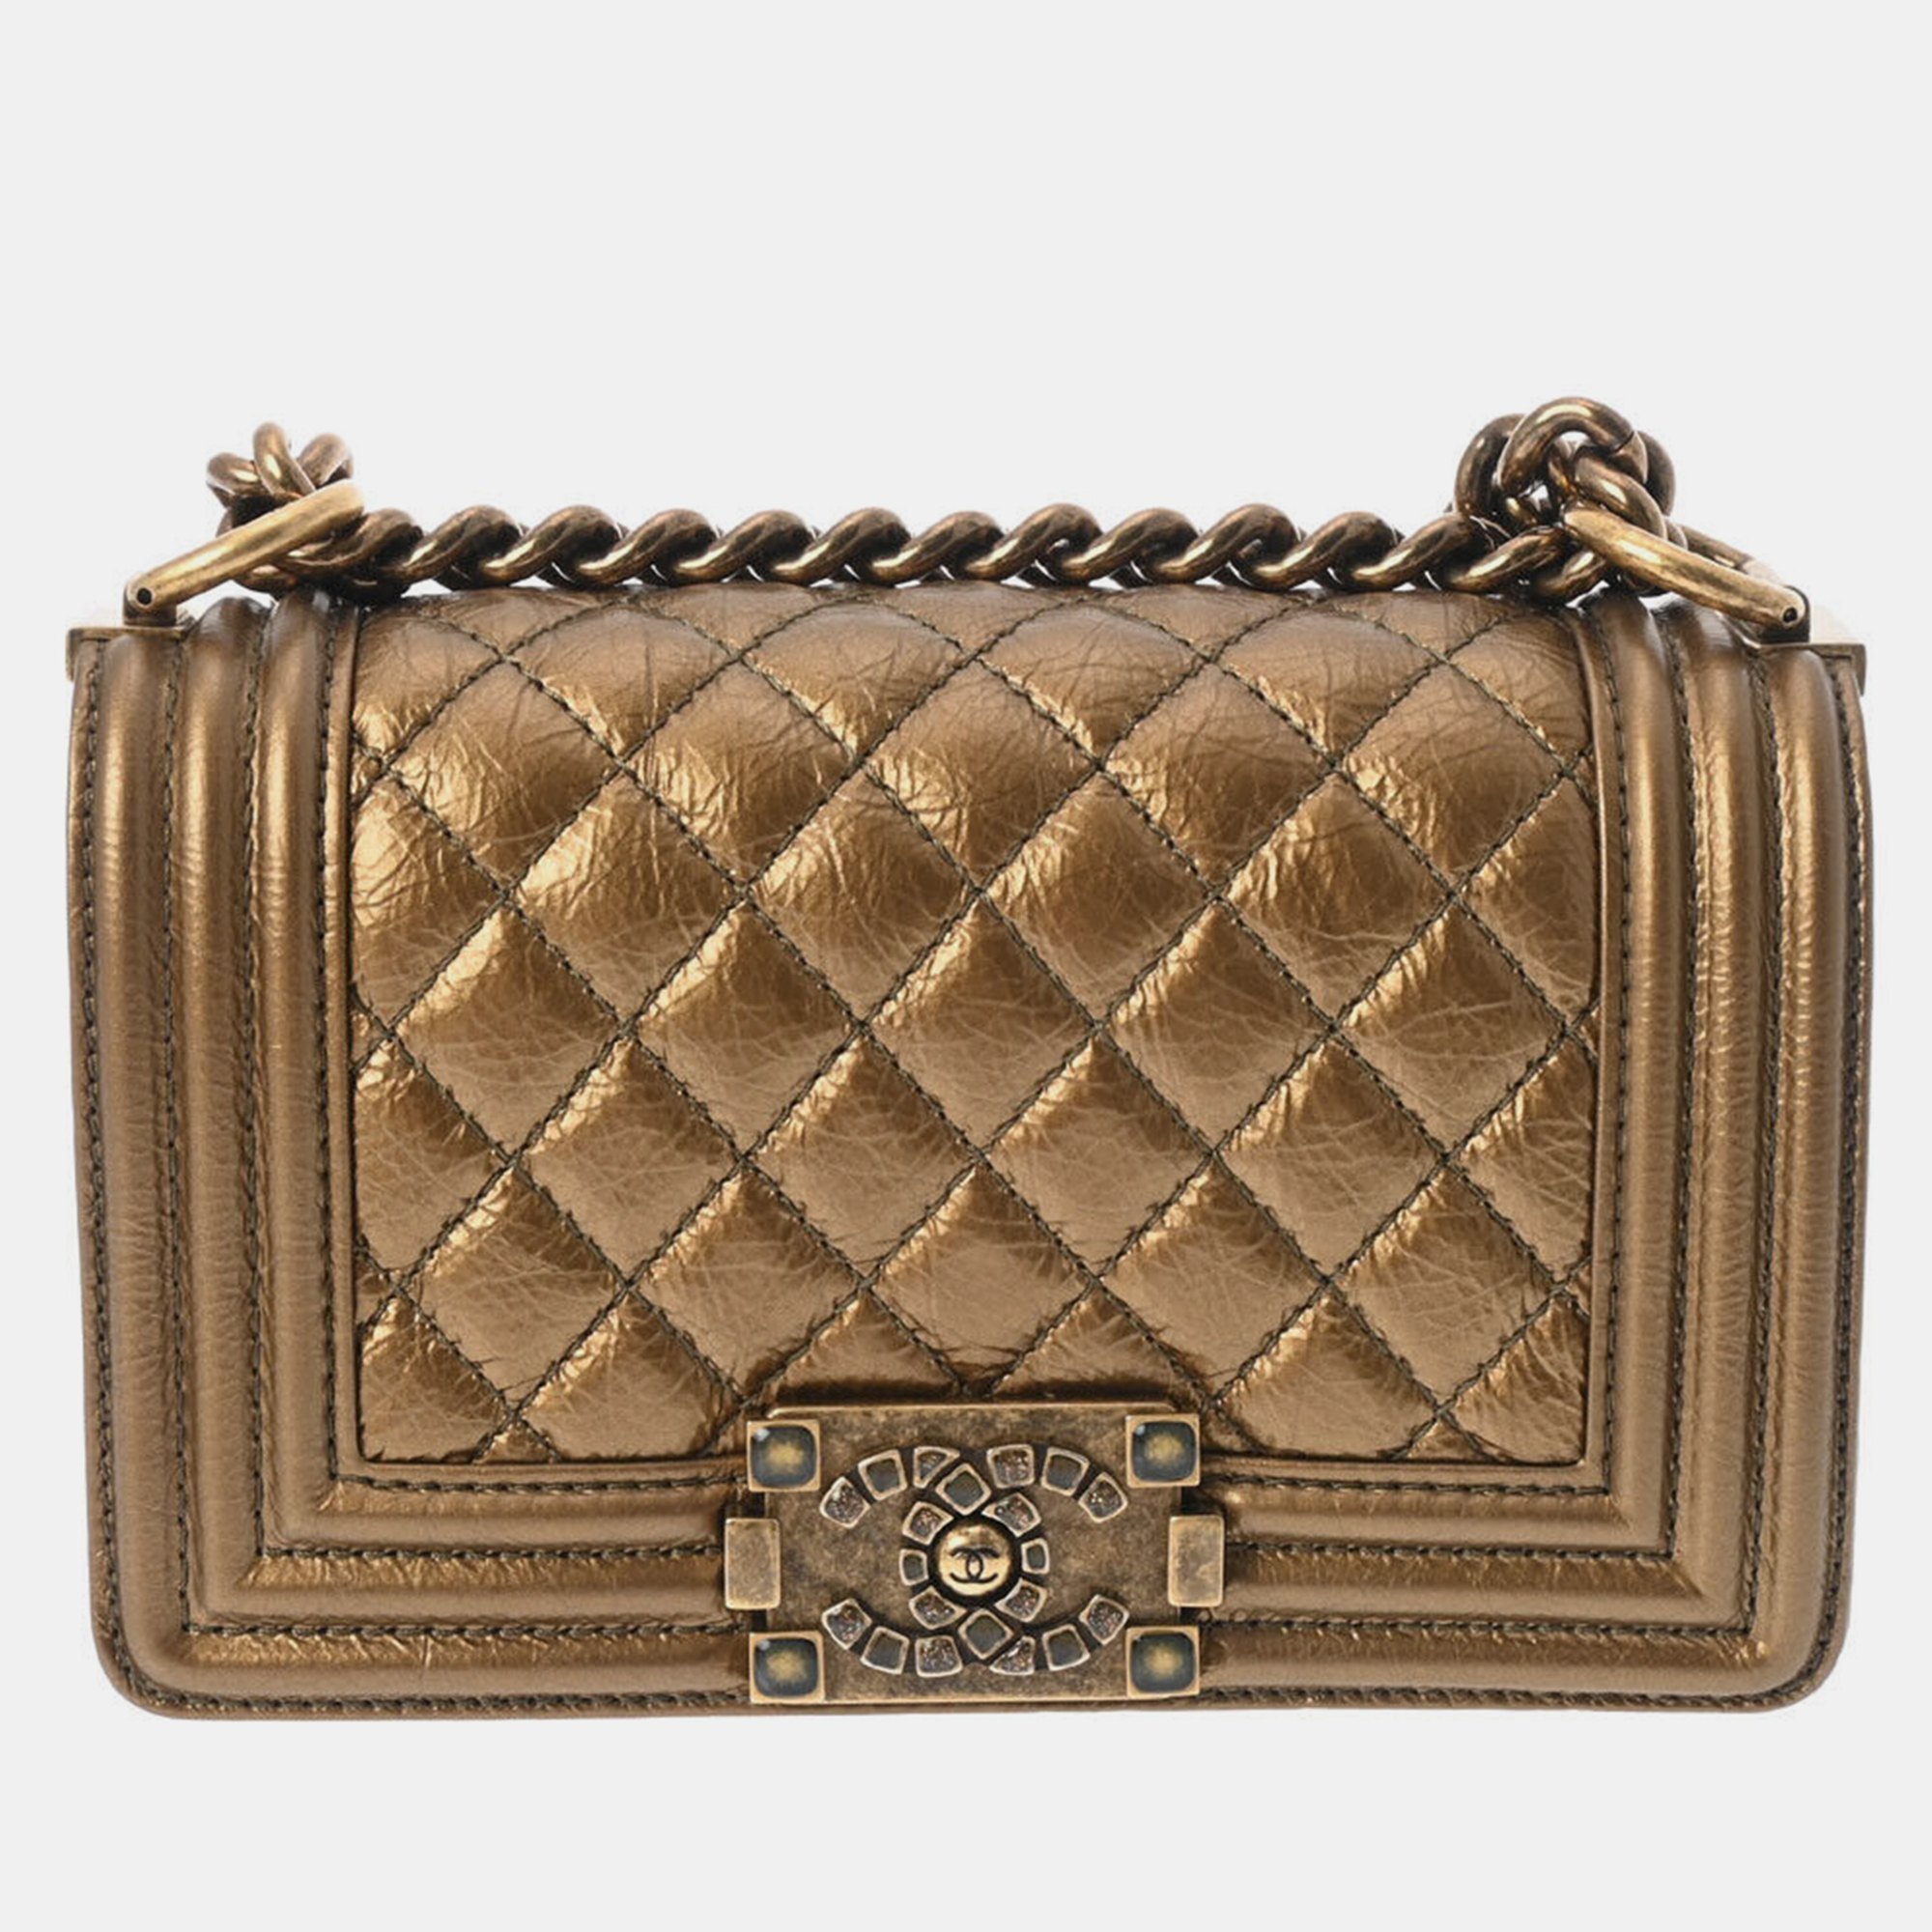 Chanel gold leather boy shoulder bag